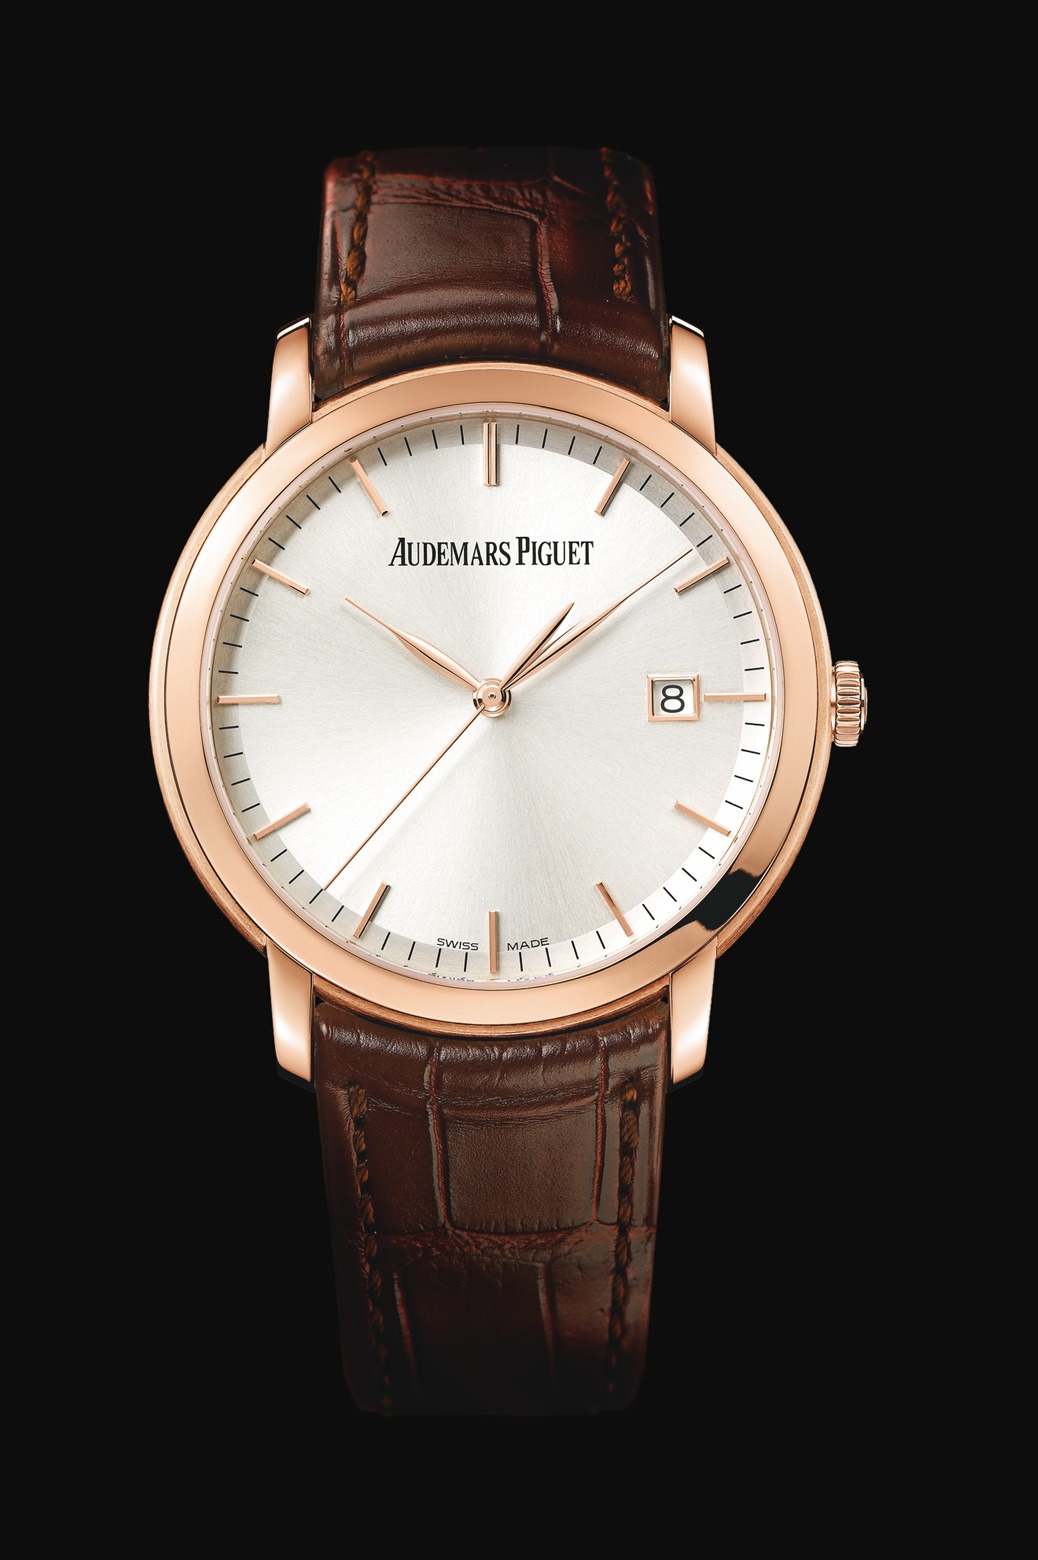 Audemars Piguet Jules Audemars Automatic Pink Gold watch REF: 15170OR.OO.A088CR.01